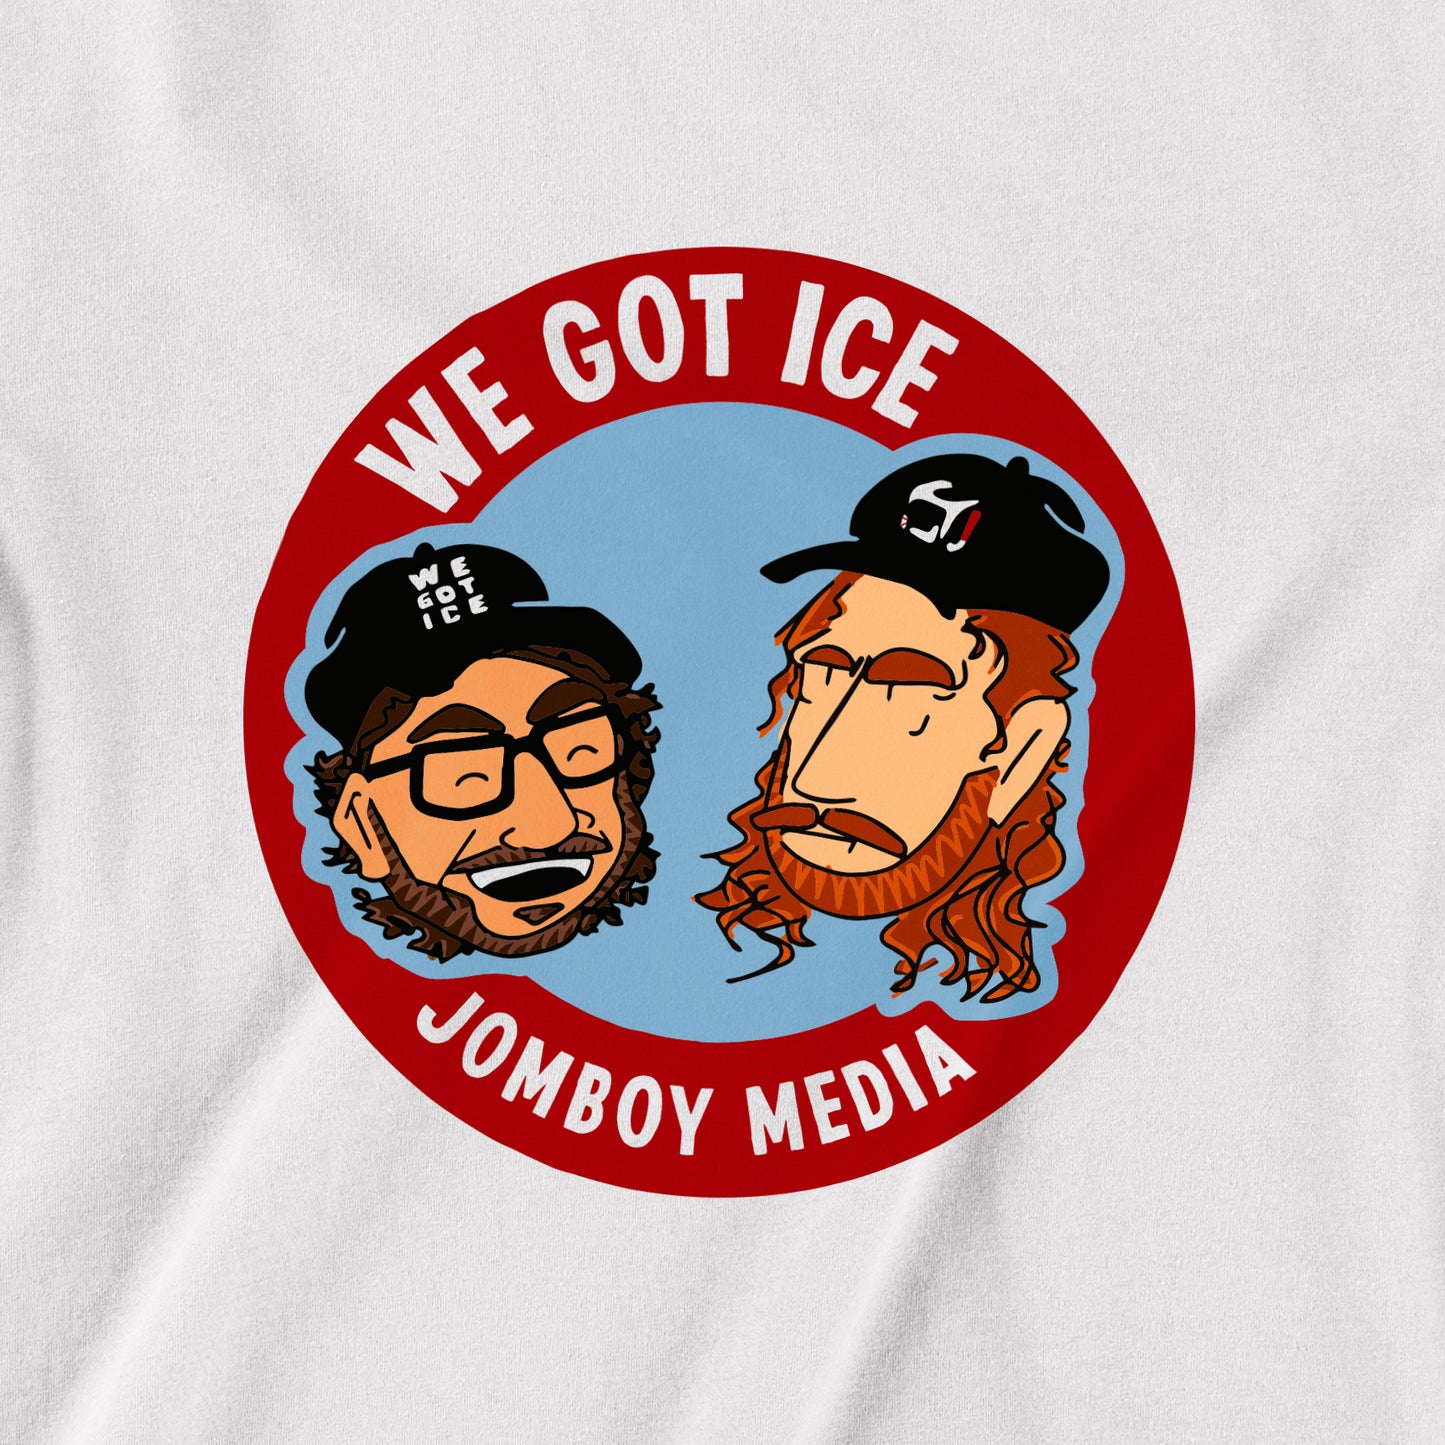 We Got Ice Team Shirt | T-Shirt